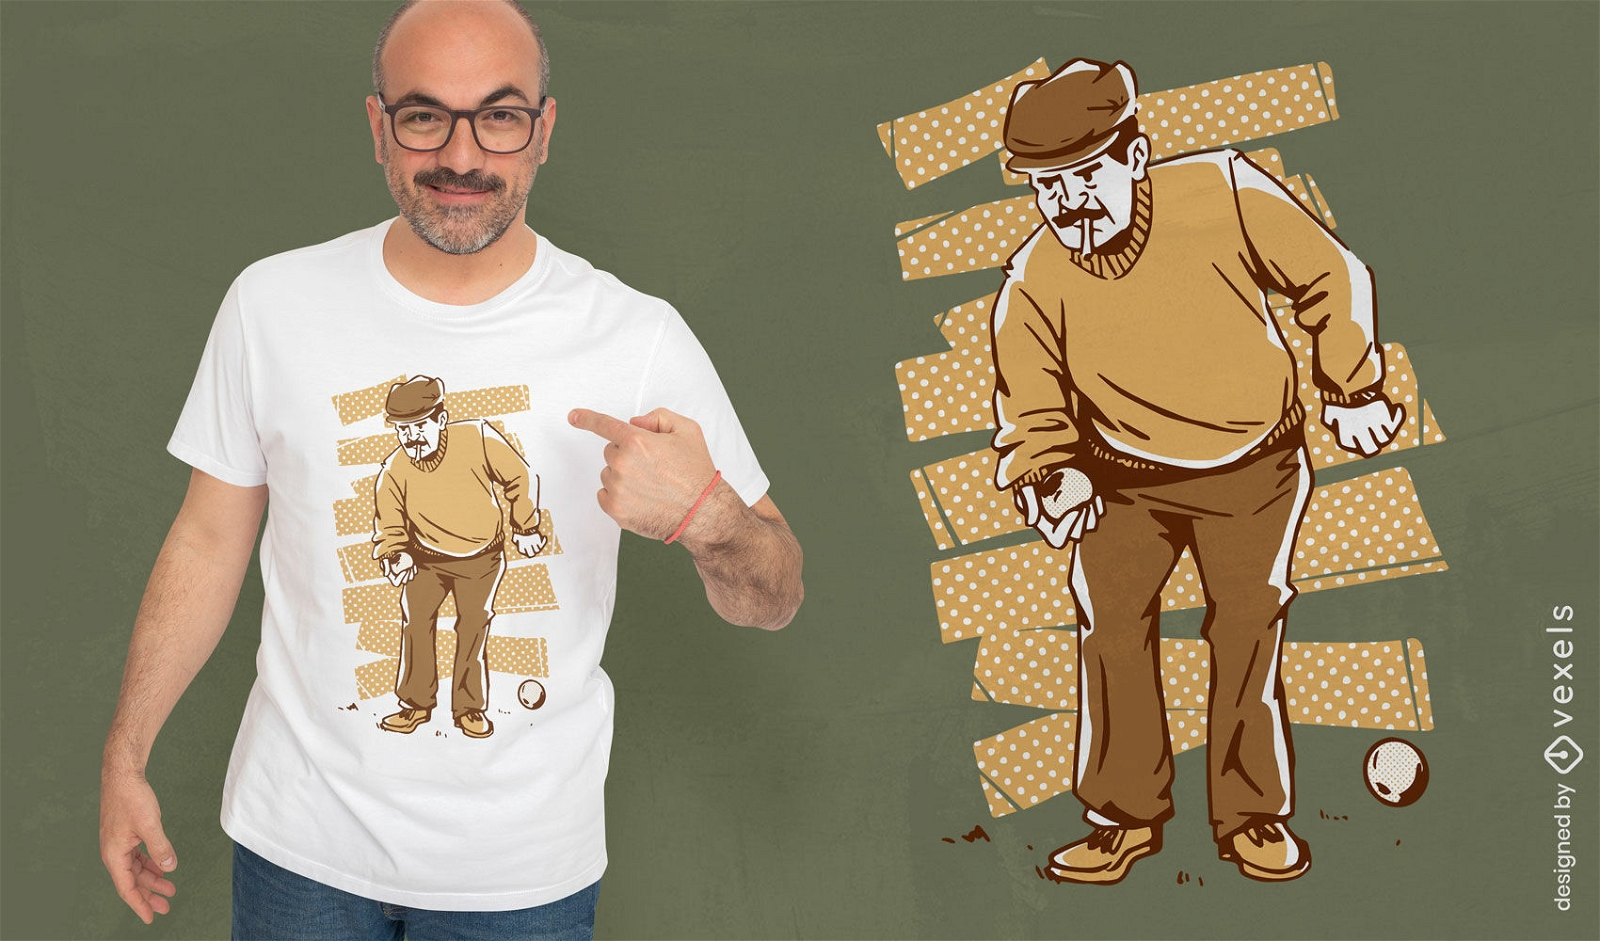 Boule-Spieler-Mann-T-Shirt-Design